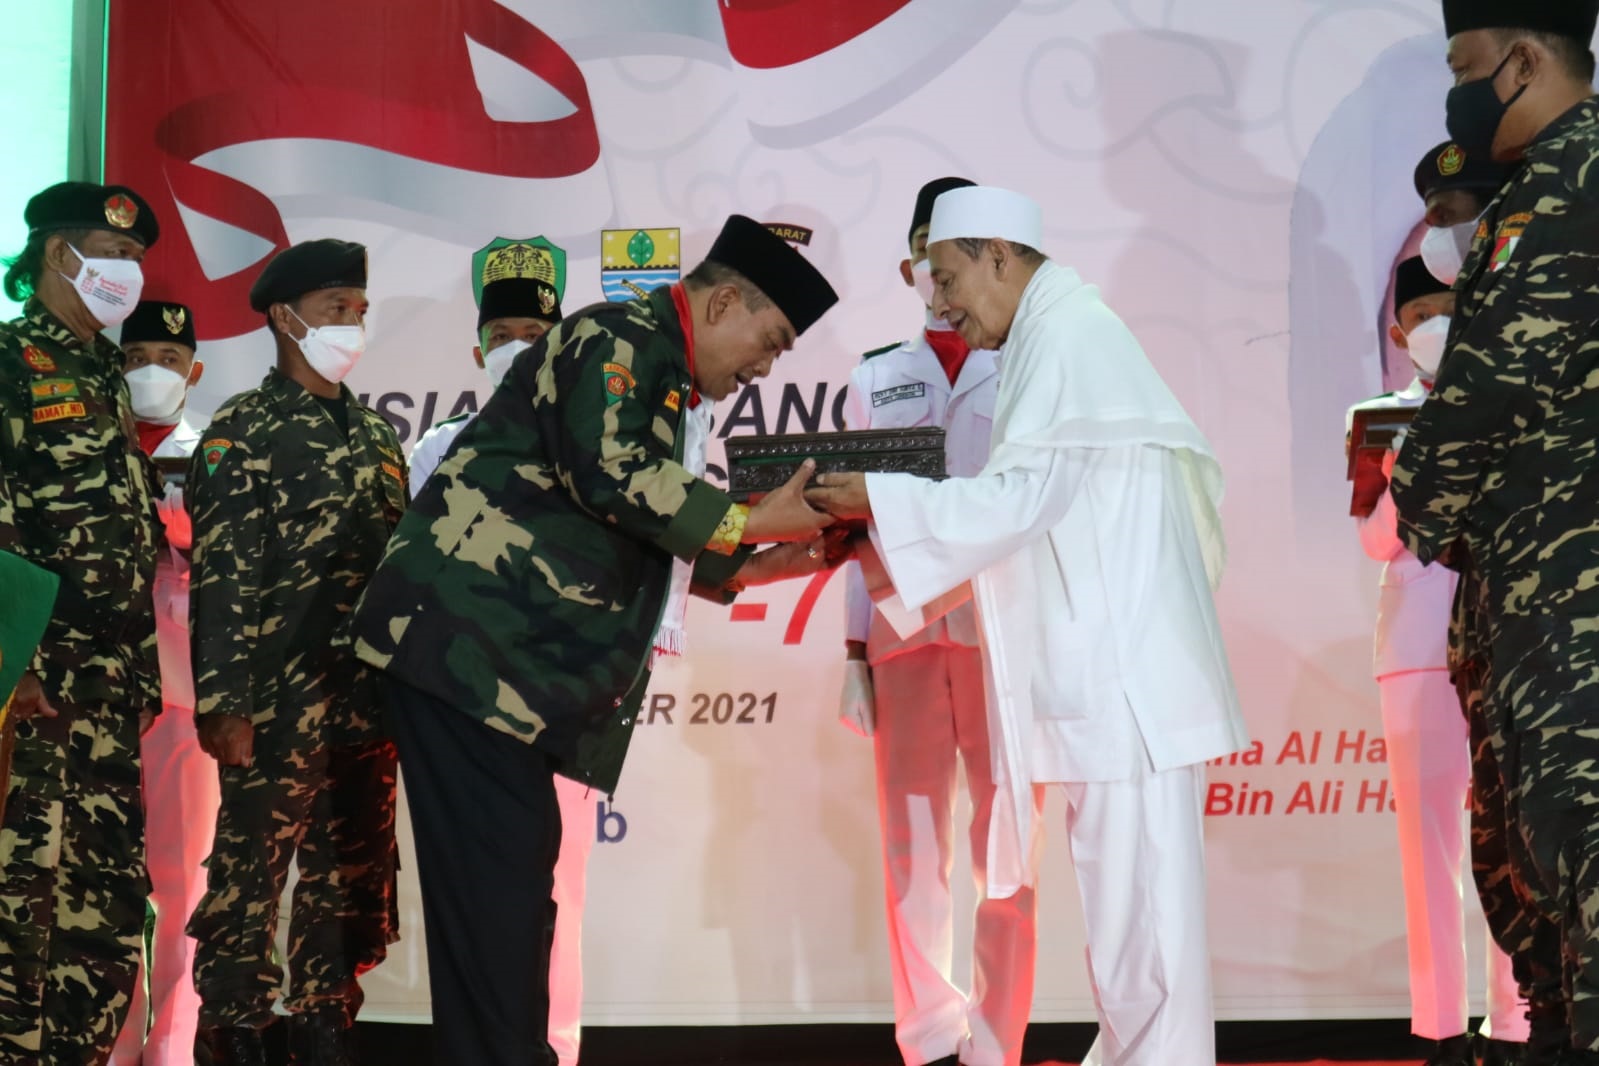 Bersama Menjaga Persatuan Indonesia